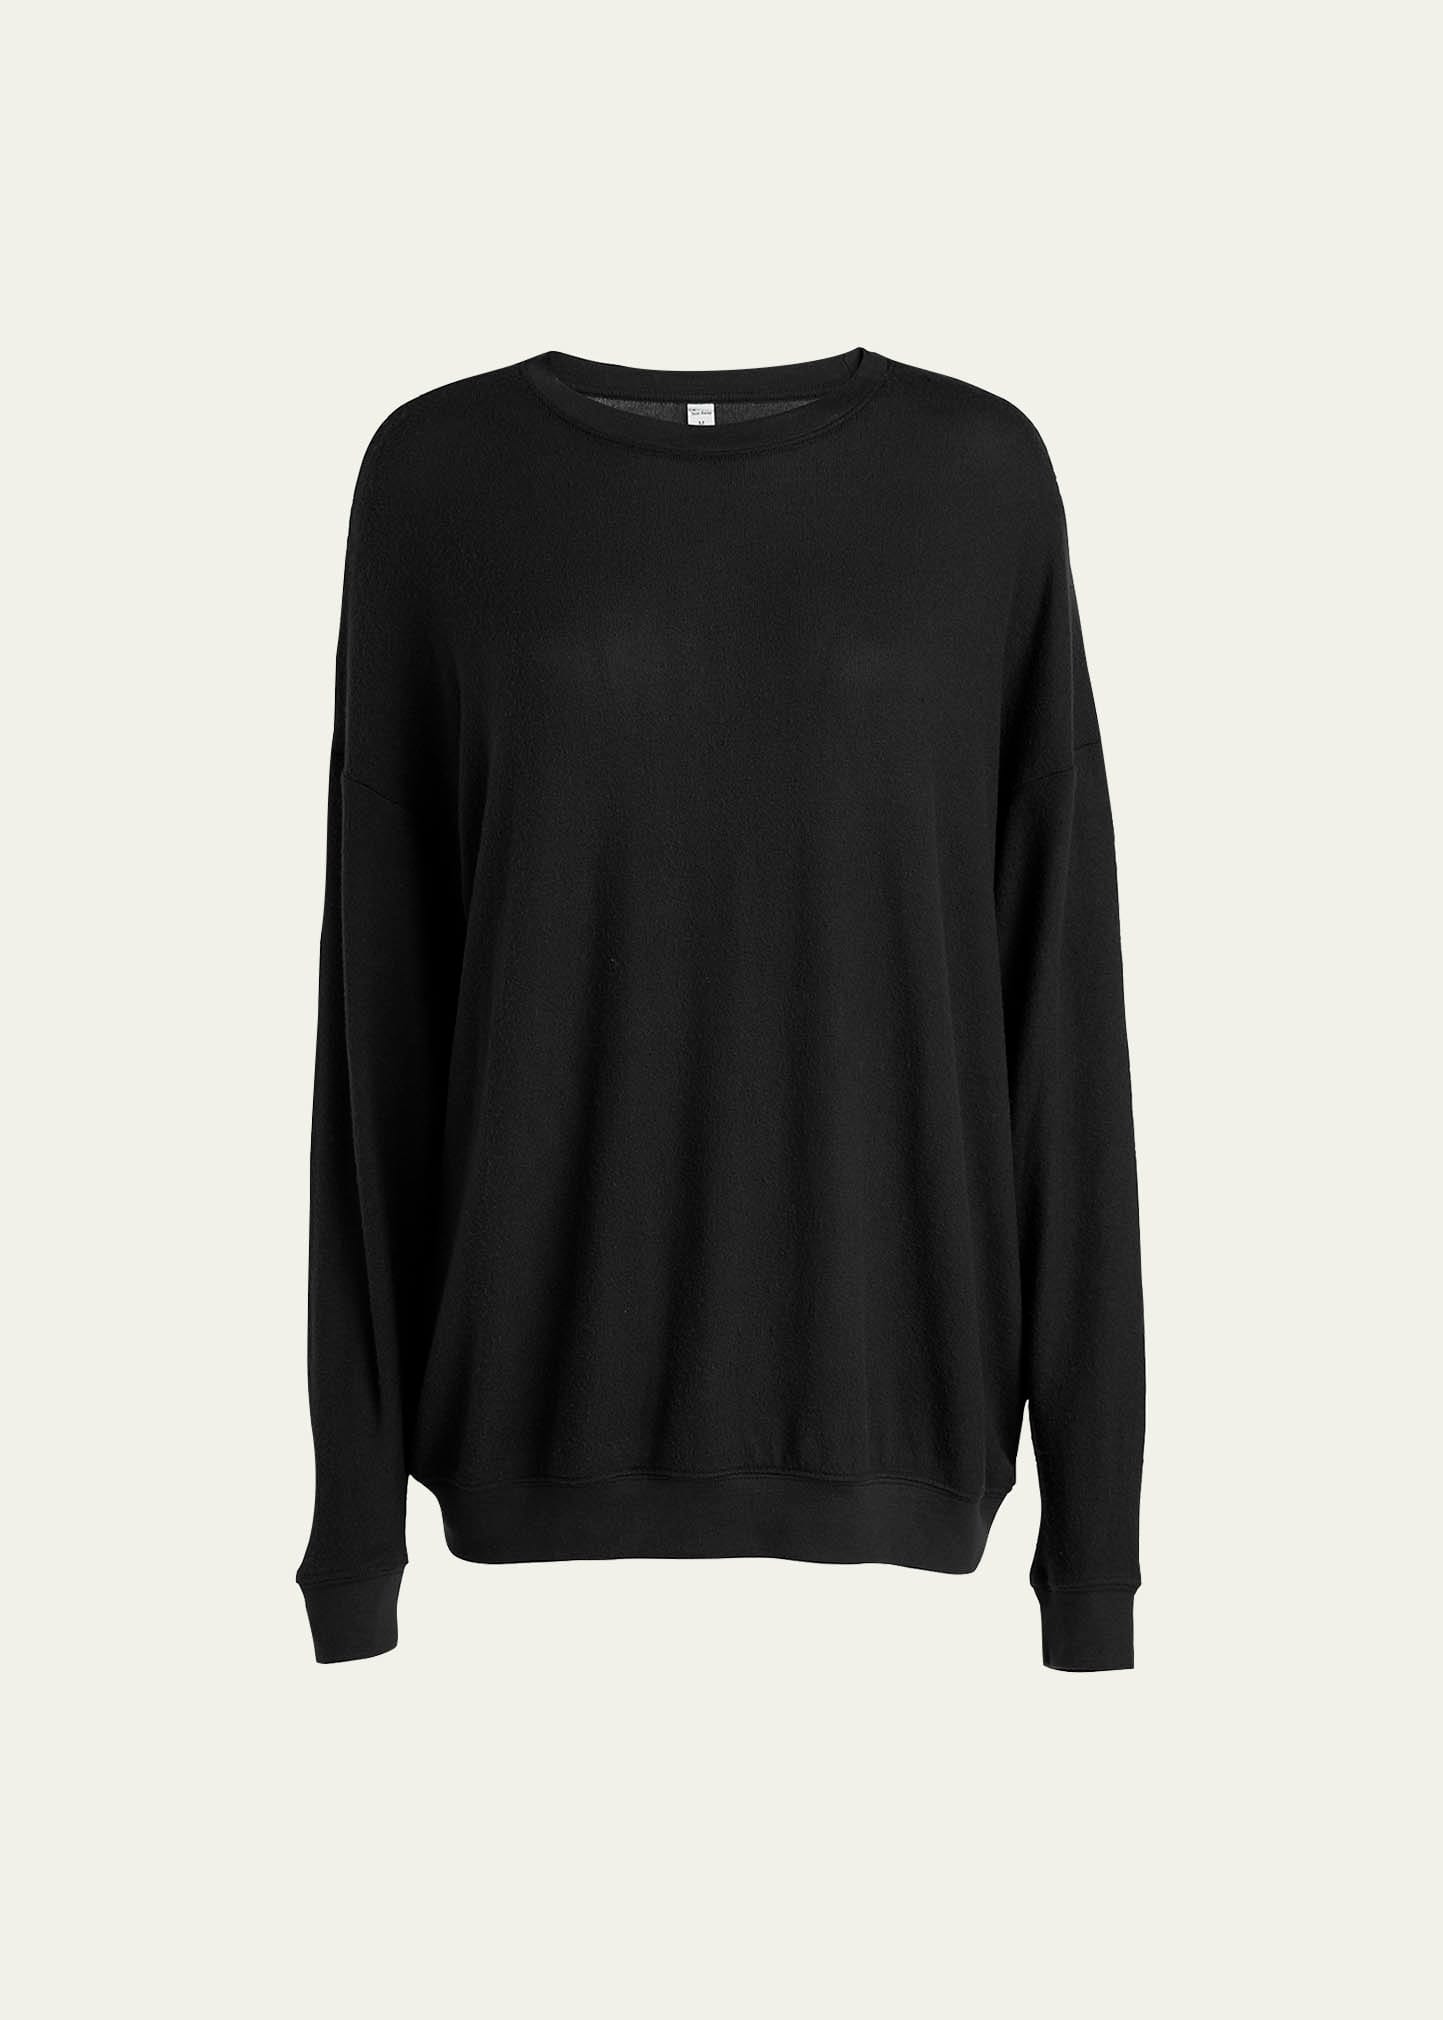 Alo Yoga Soho Crewneck Pullover Sweatshirt In Black